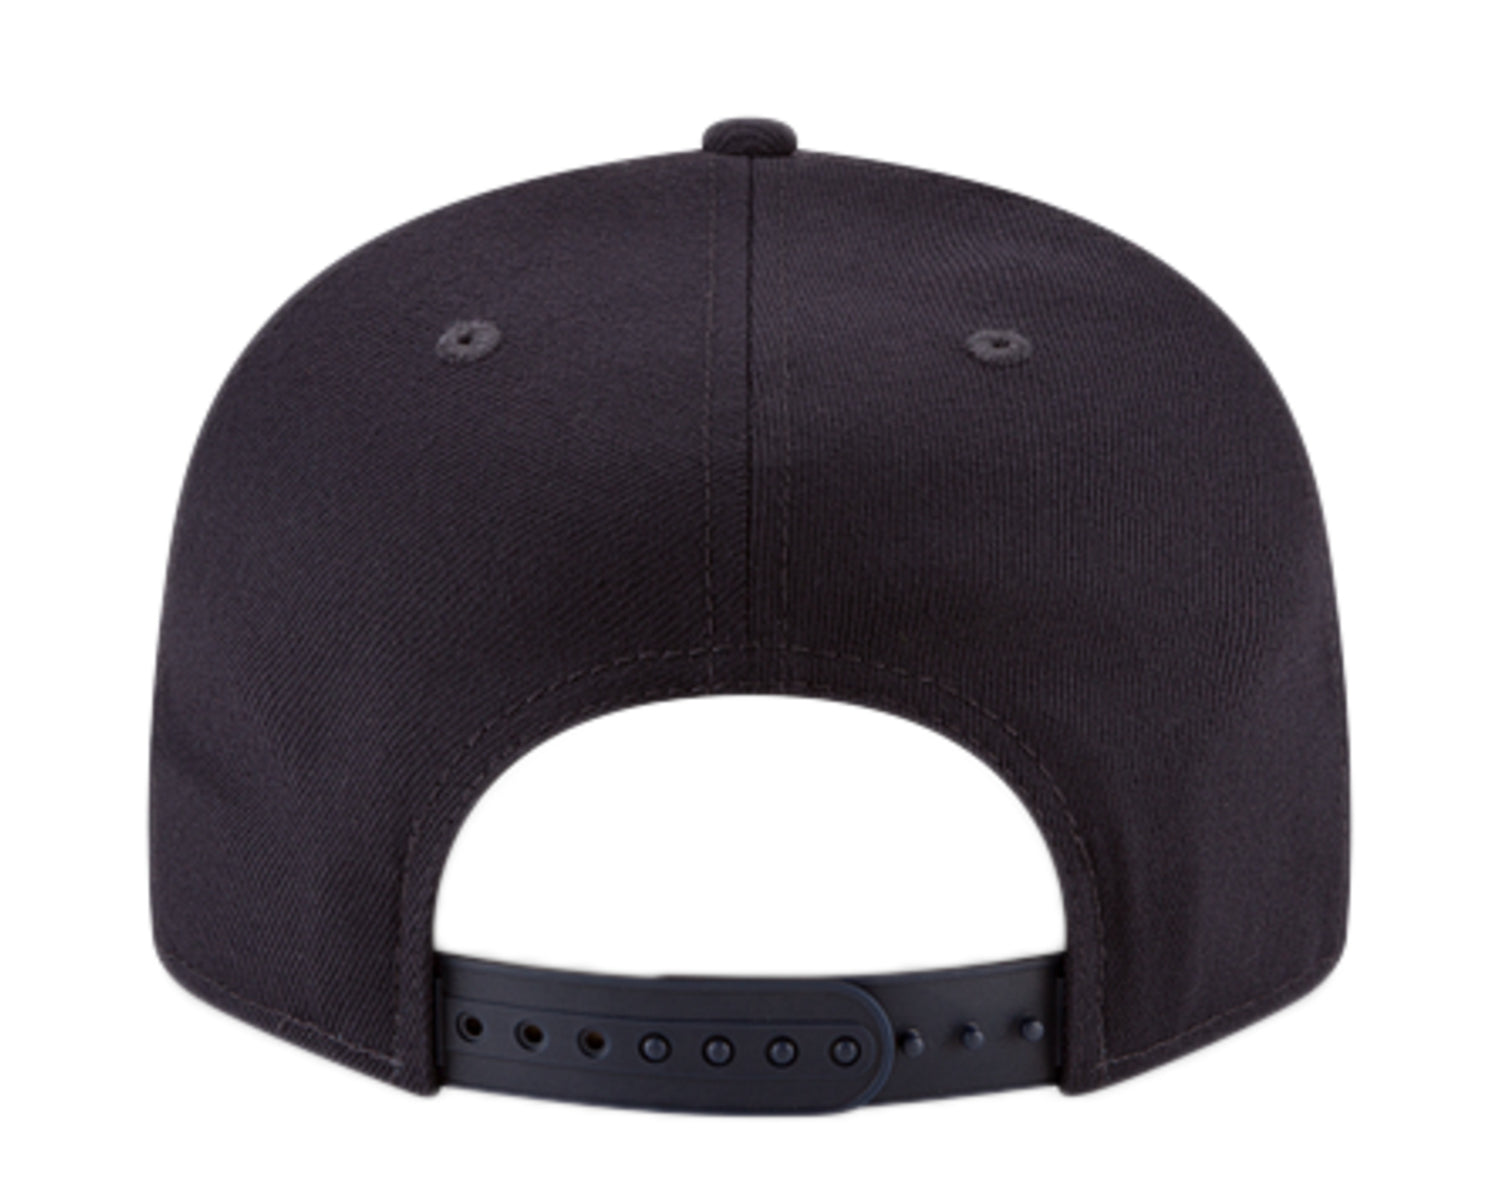 New Era 9Fifty MLB Houston Astros Basic Snapback Hat